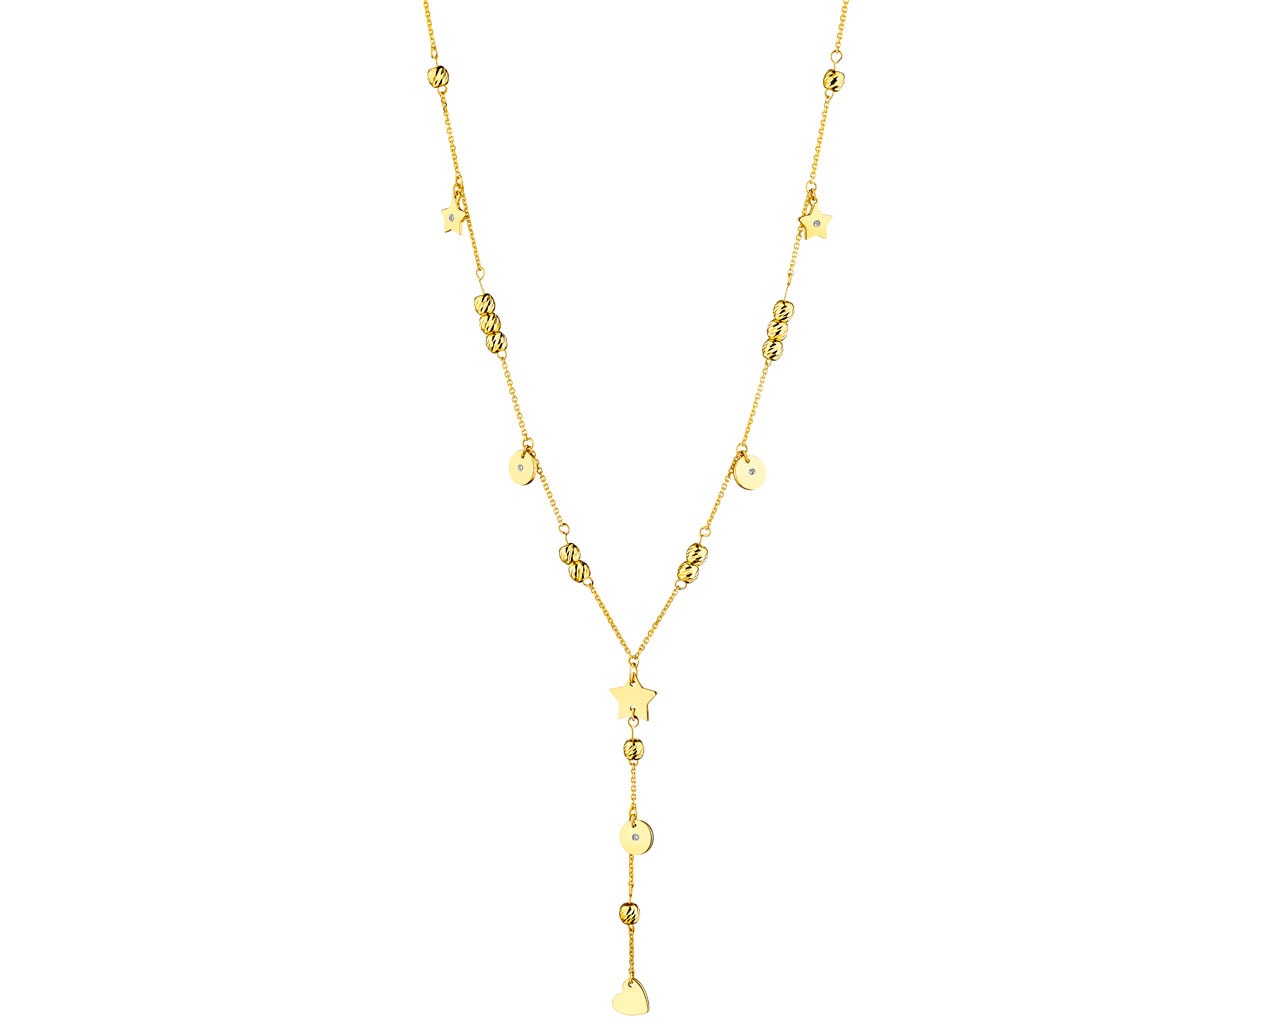 Zlatý náhrdelník s diamanty - hvězdy, kolečka, srdce 0,01 ct - ryzost 585